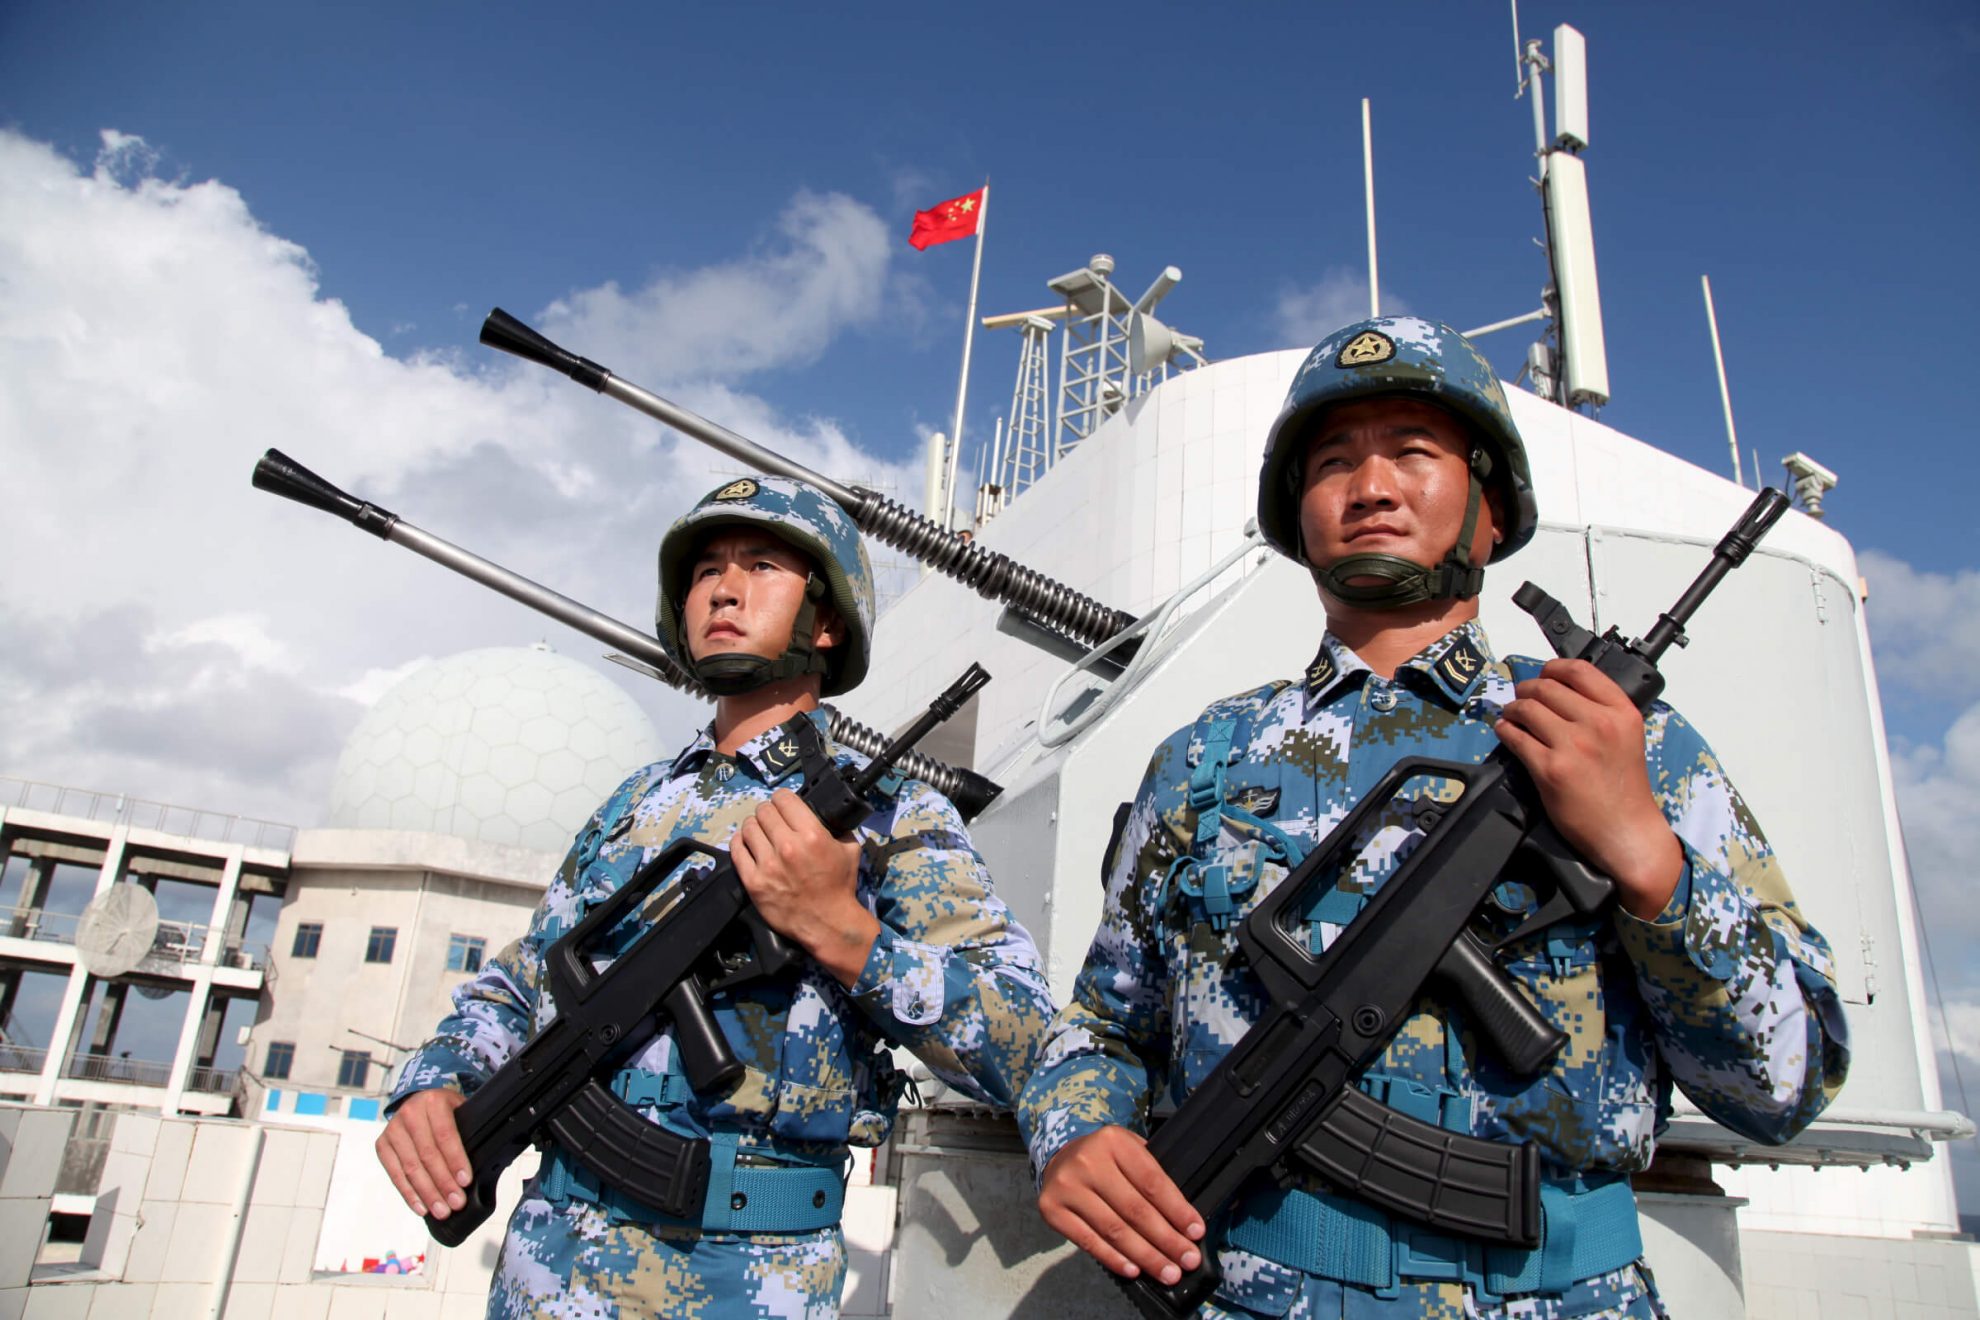 Vanuatu antradienį pareiškė neturinti planų leisti savo teritorijoje įkurti Kinijos karinę bazę, pasirodžius pranešimui, kad Pekinas stumia tokį pasiūlymą